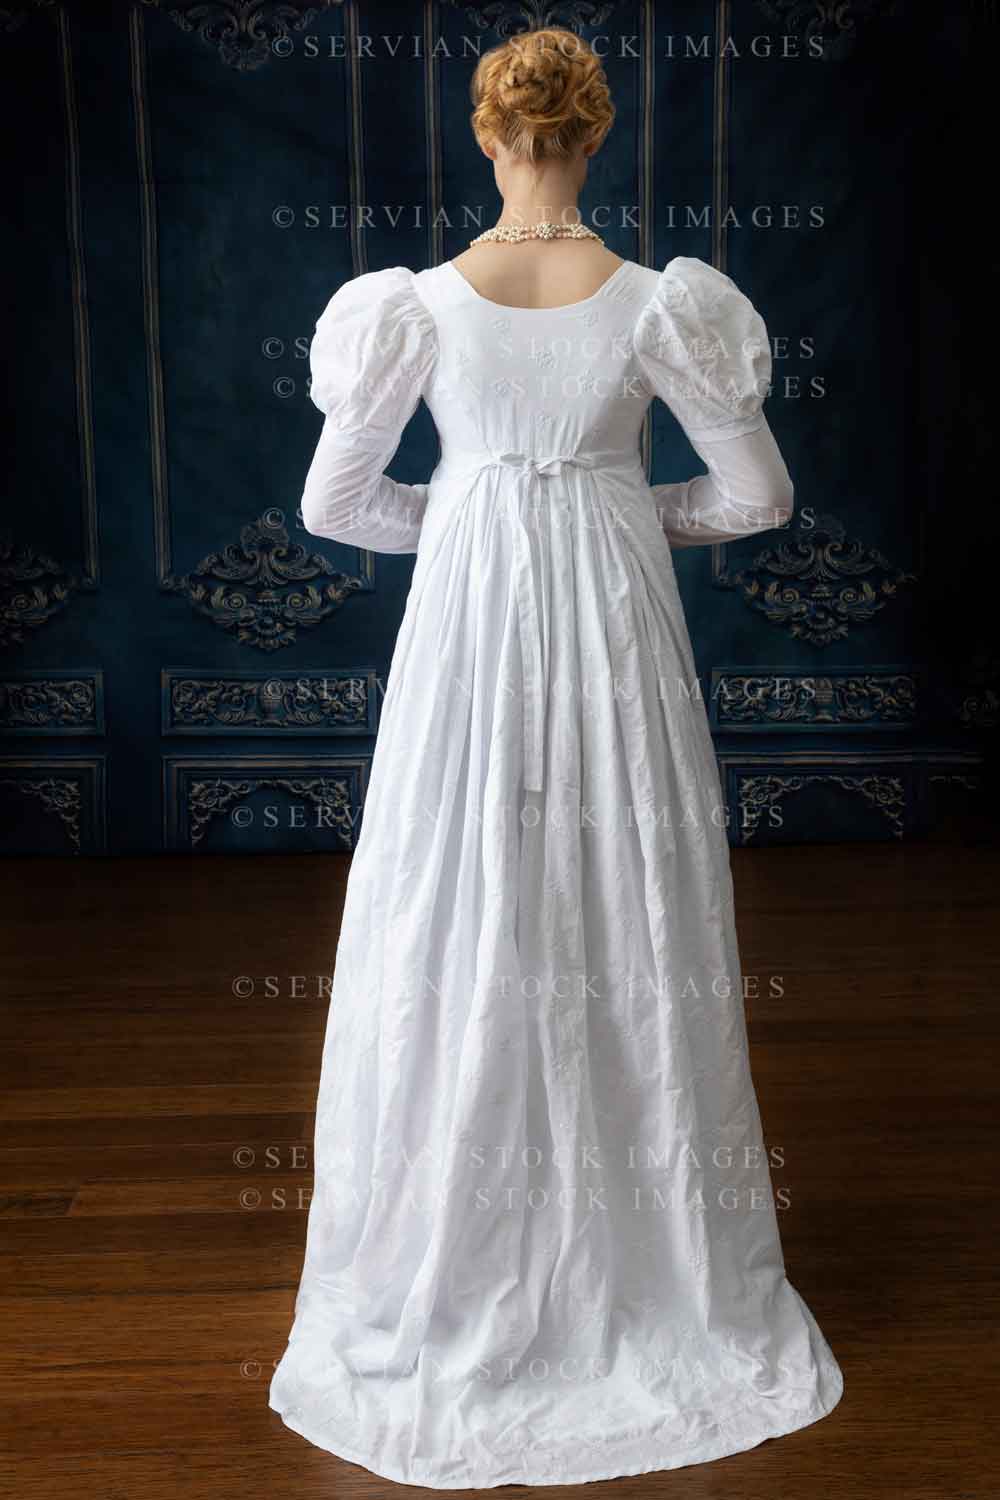 Regency woman in white muslin dress (Lauren 4423)